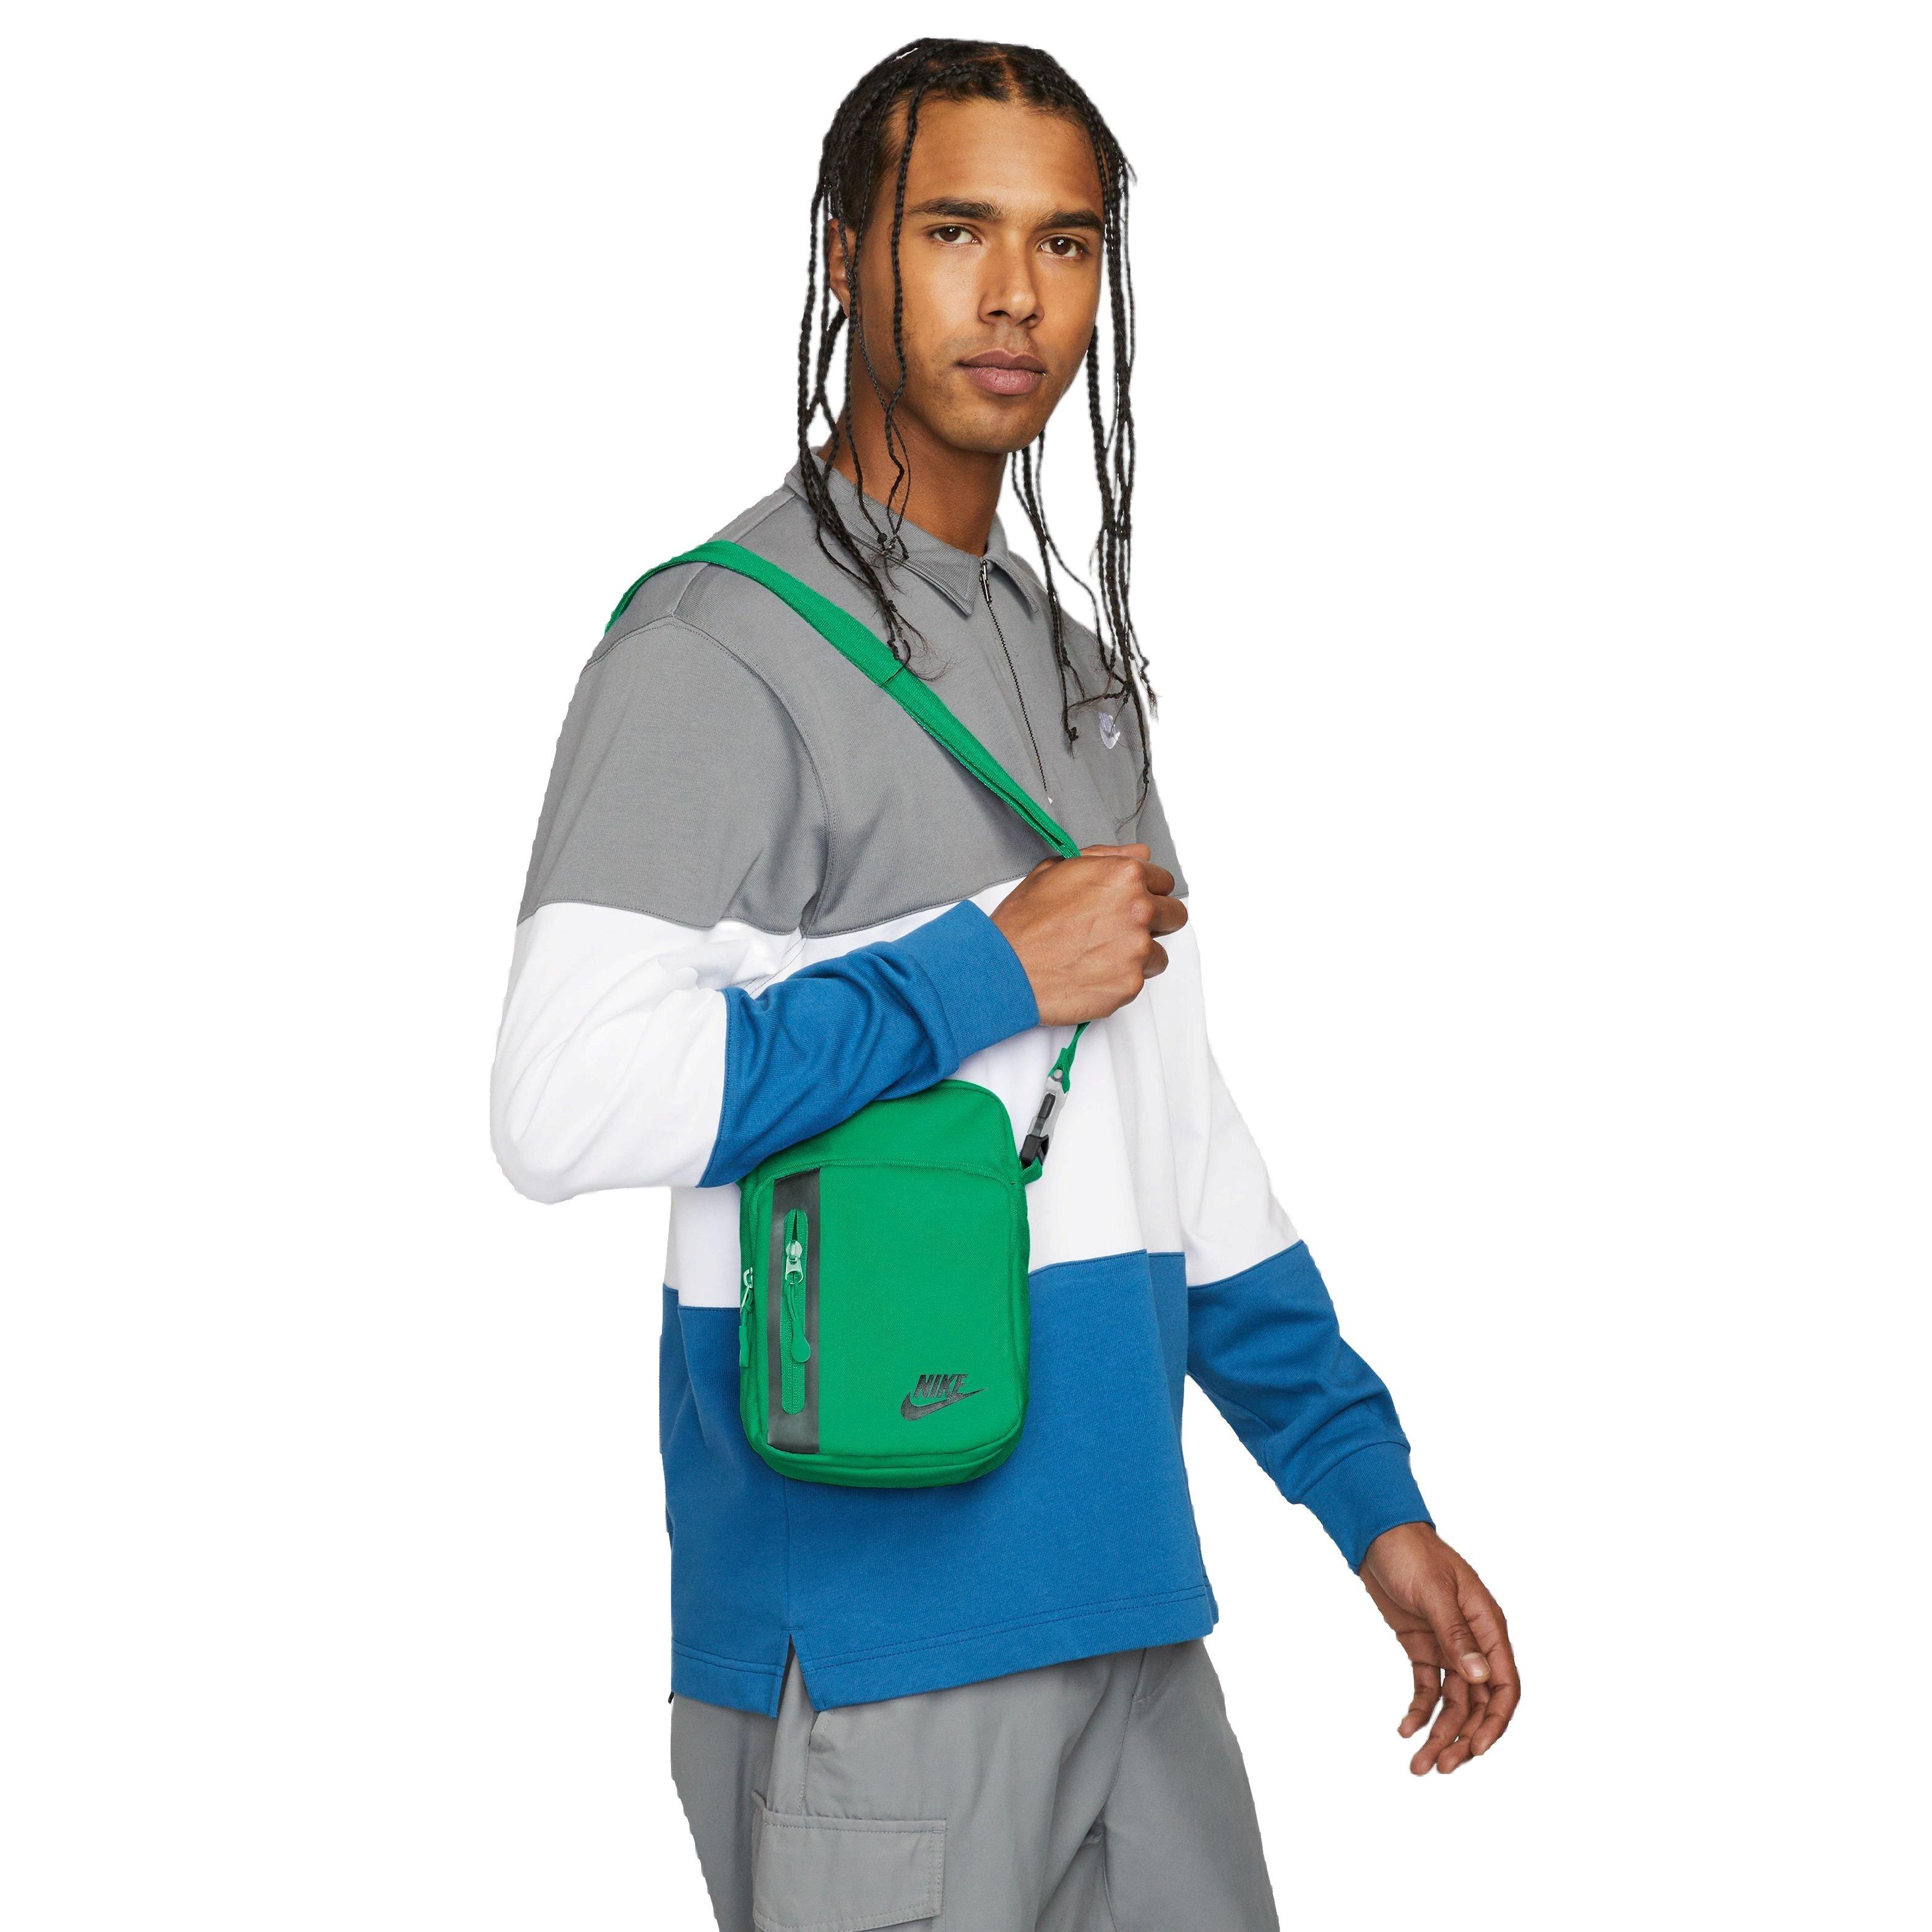 Nike Elemental Premium Crossbody Bag 